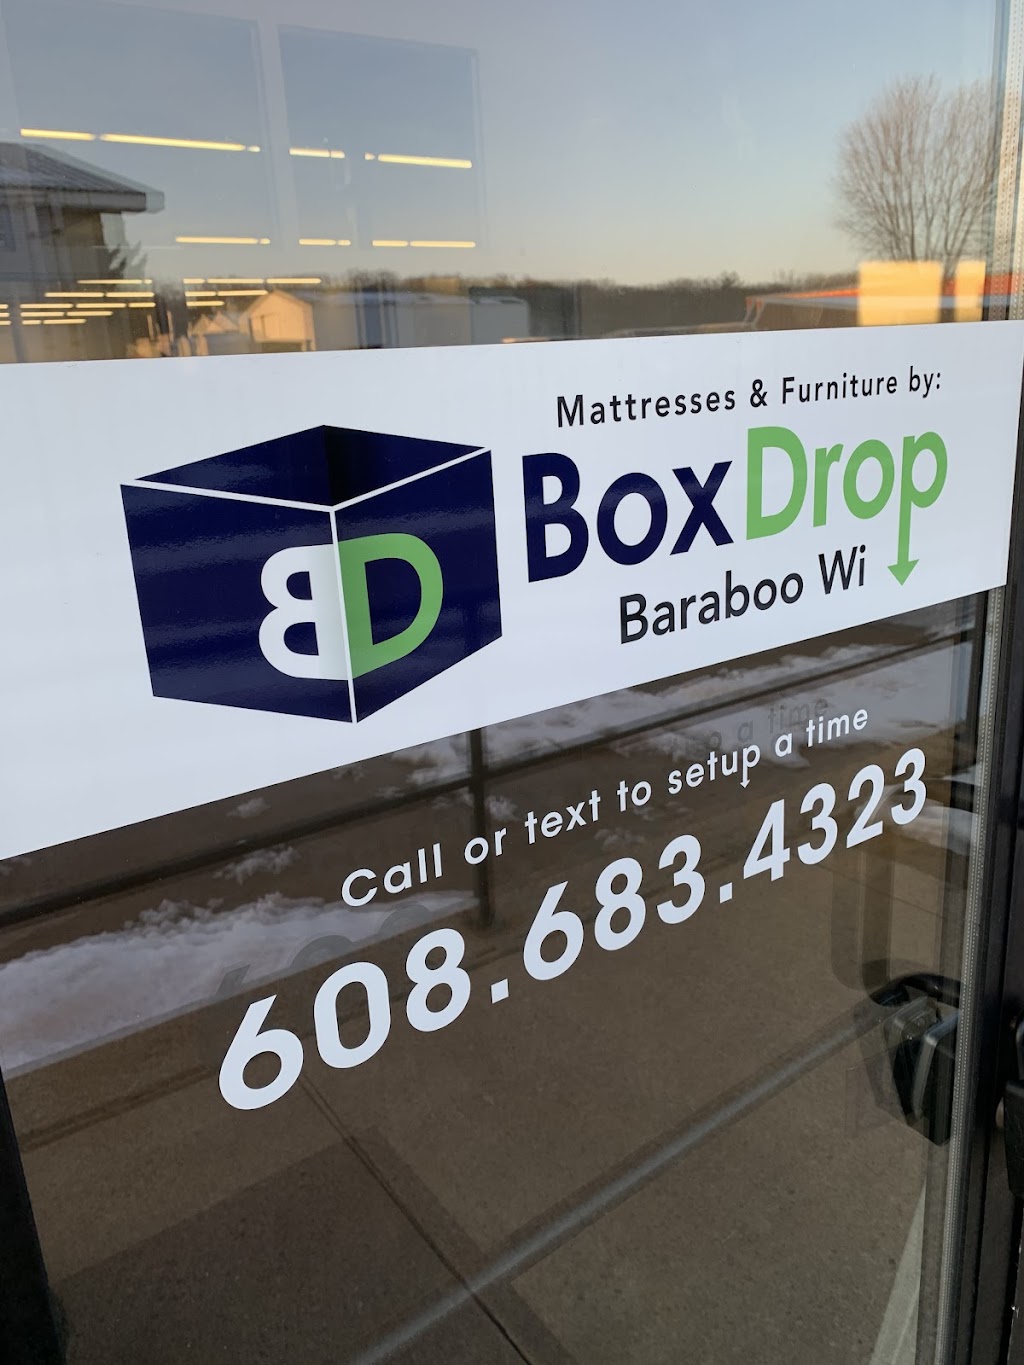 Box Drop Baraboo Mattress & Furniture | 830 Lincoln Ave, Baraboo, WI 53913 | Phone: (608) 683-4323